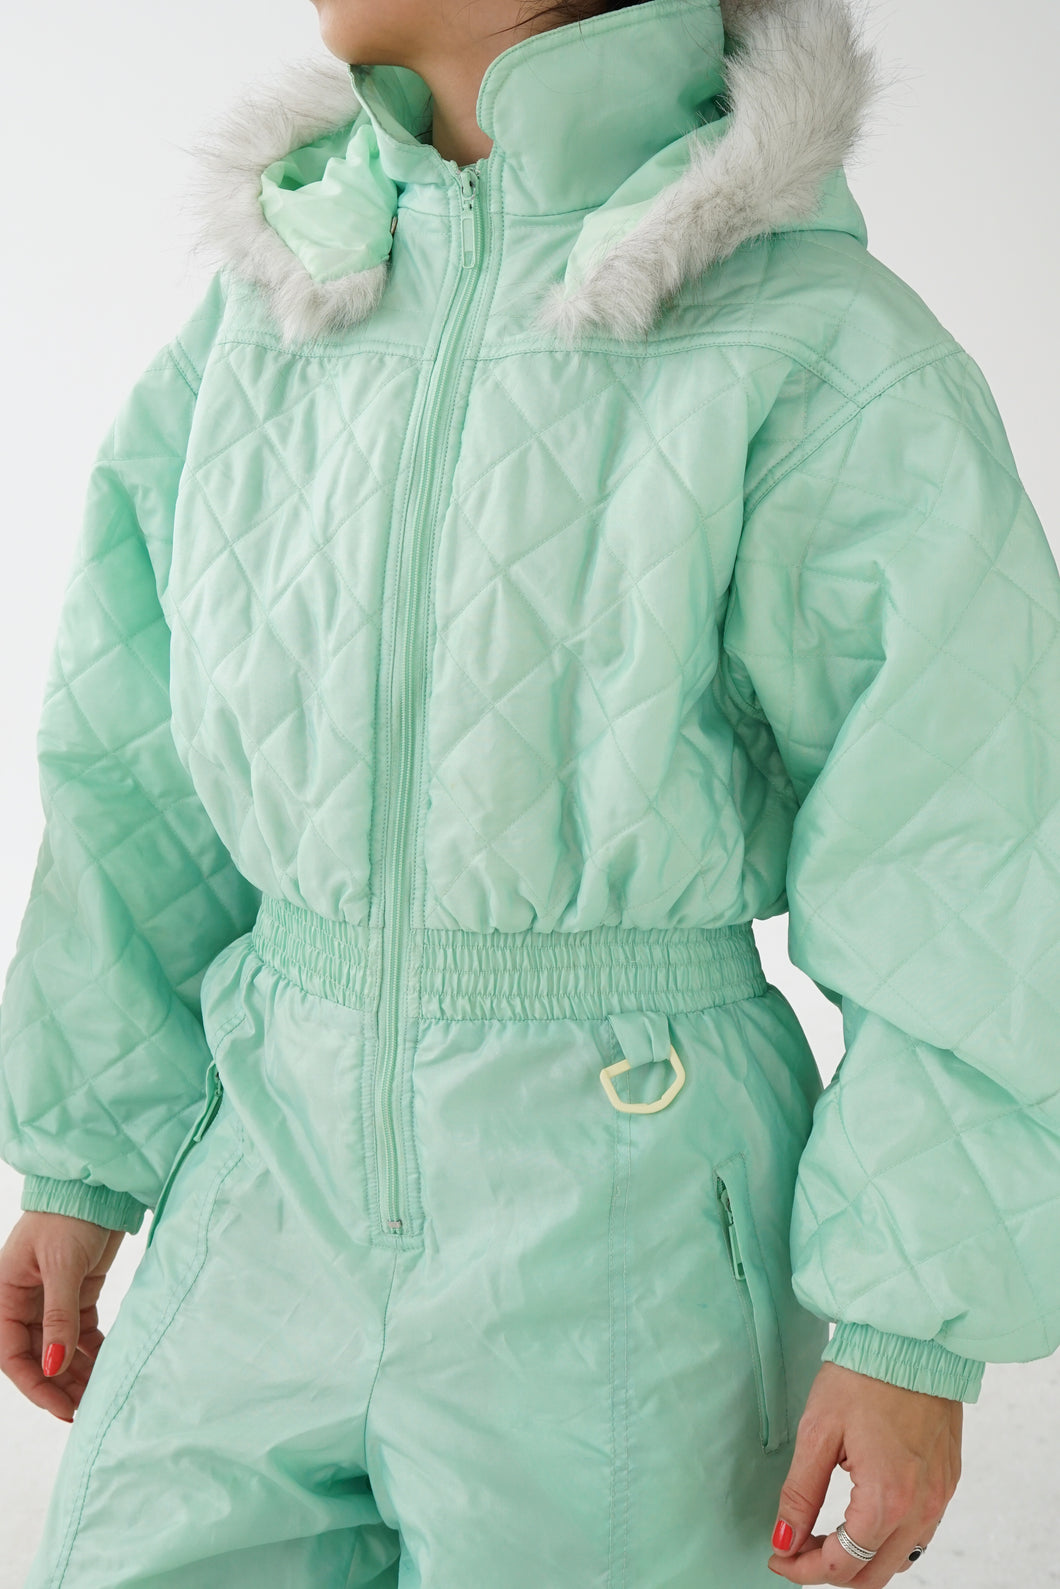 One piece vintage léger Winch Kiabi ski suit, snow suit vert menthe unisexe taille 38/40 (M)